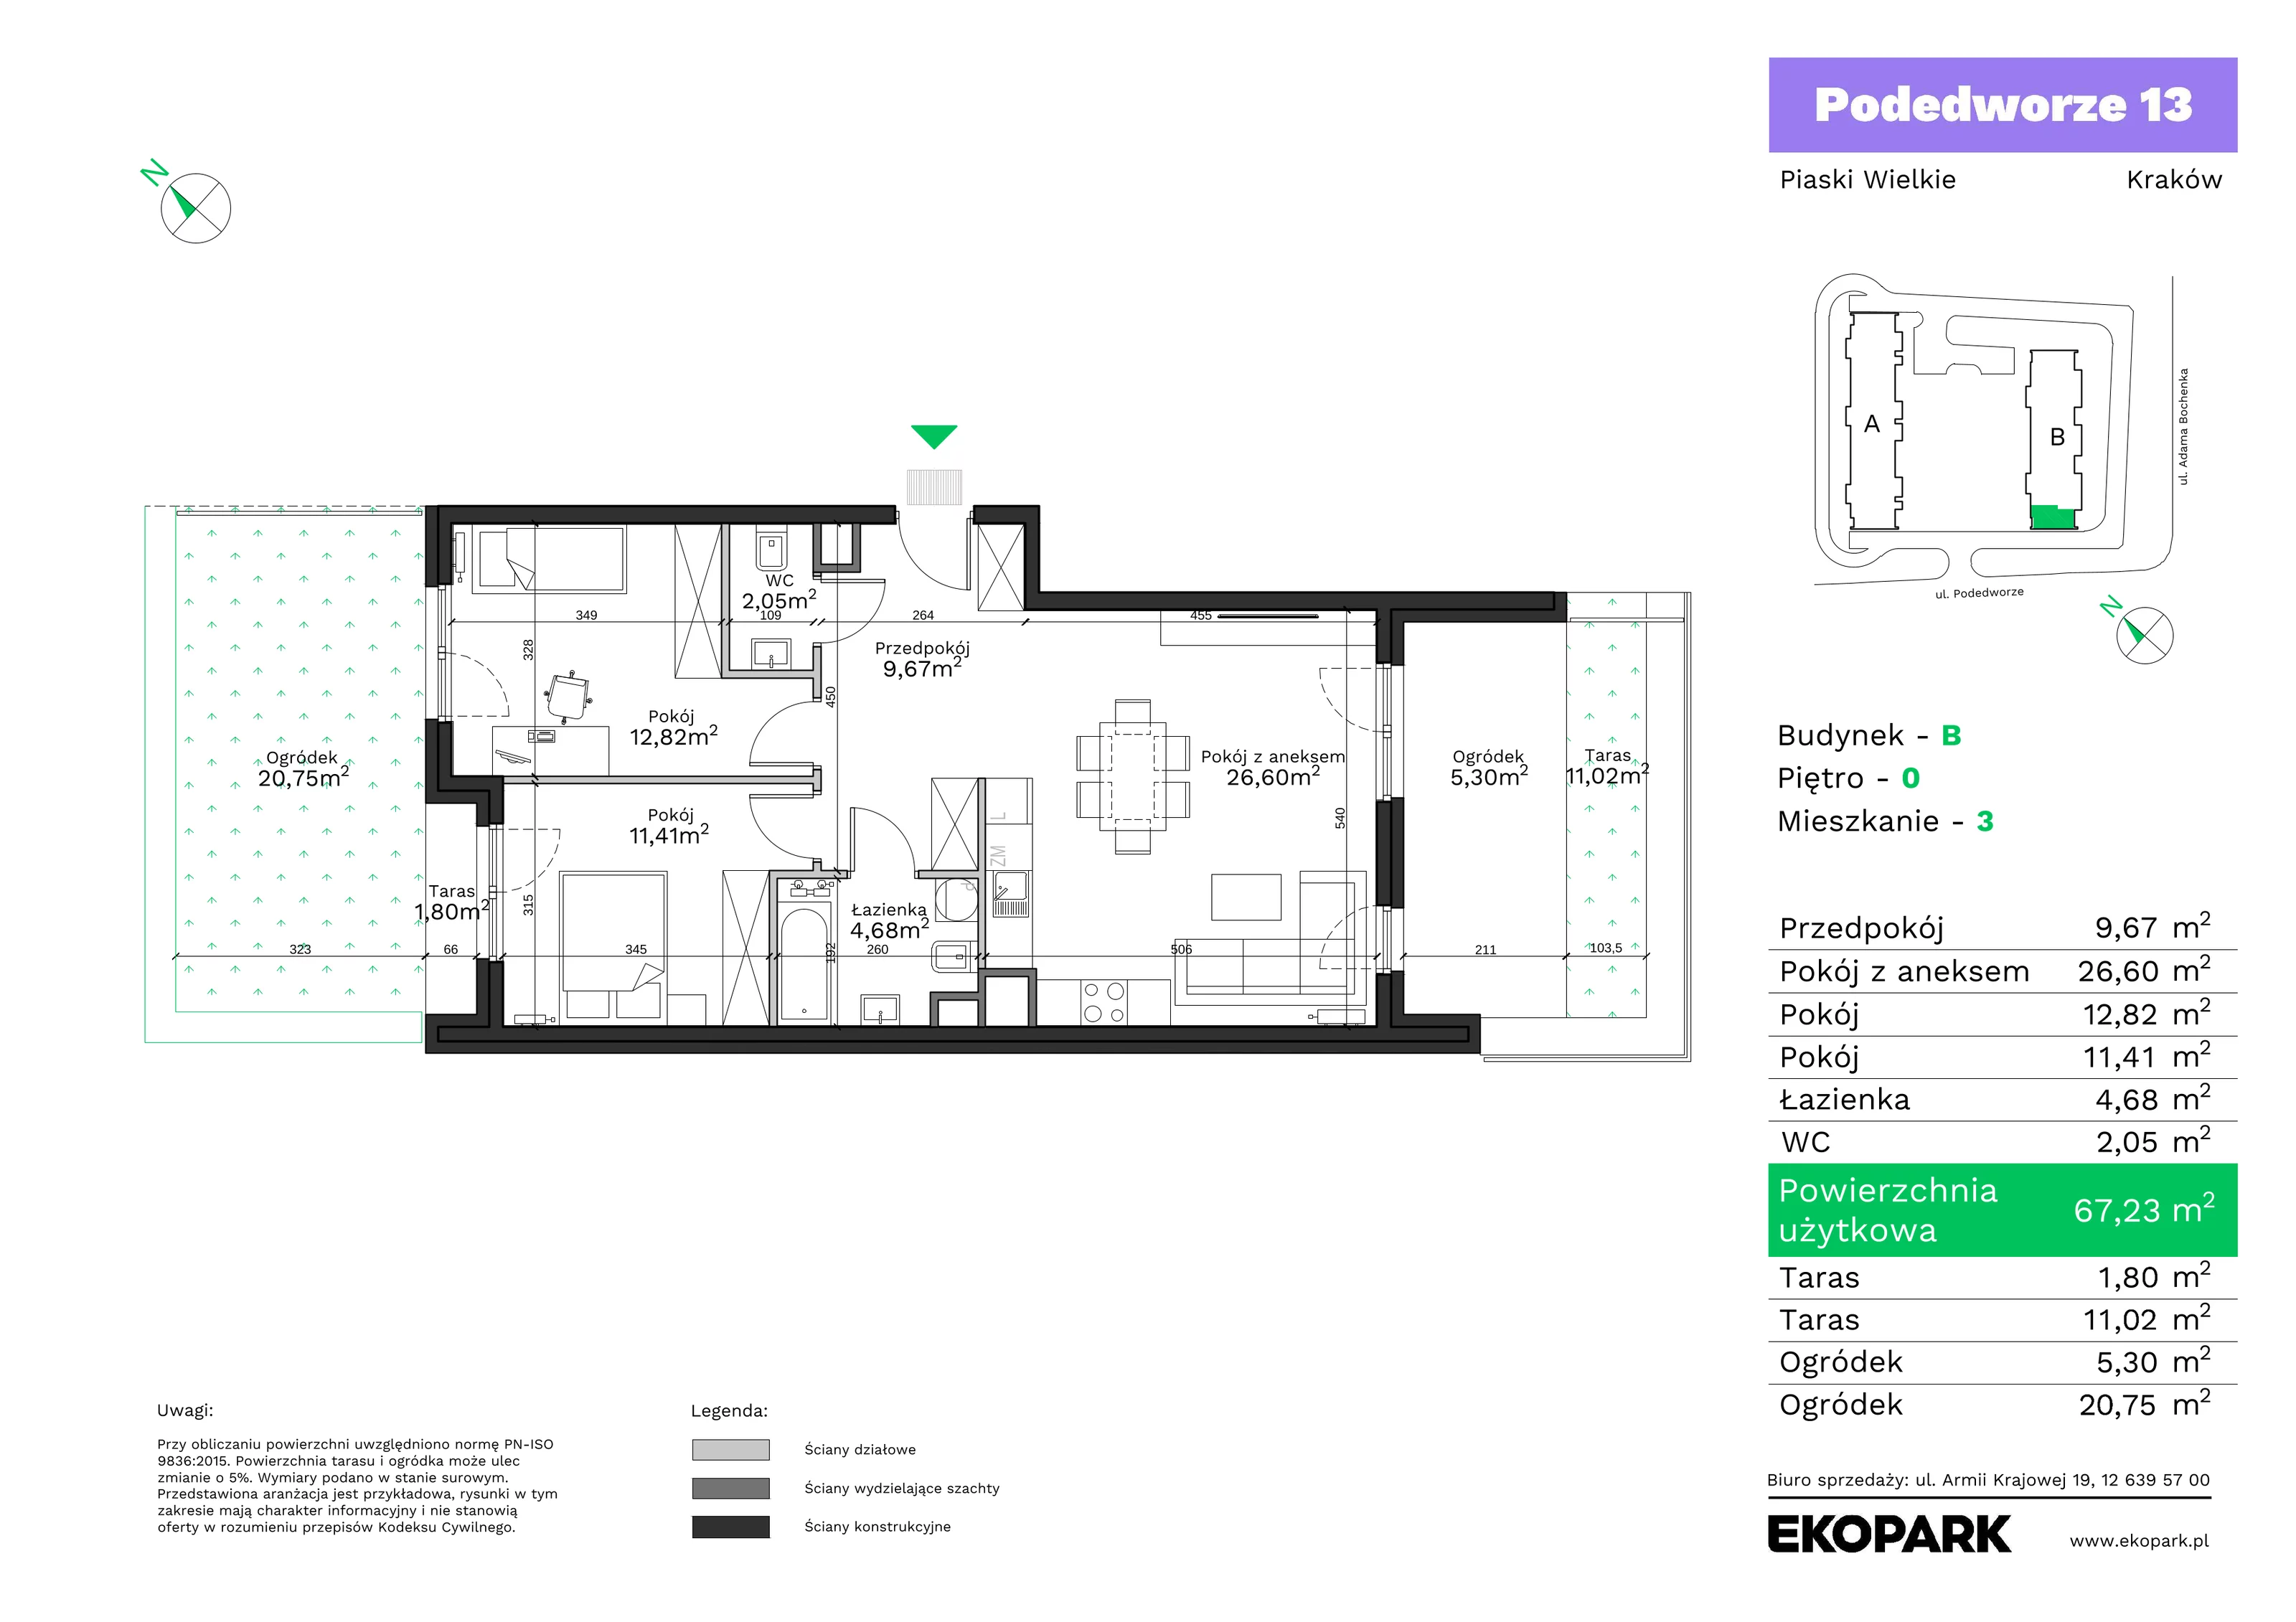 Mieszkanie 67,23 m², parter, oferta nr B3, Podedworze 13, Kraków, Podgórze Duchackie, Piaski Wielkie, ul. Podedworze 13